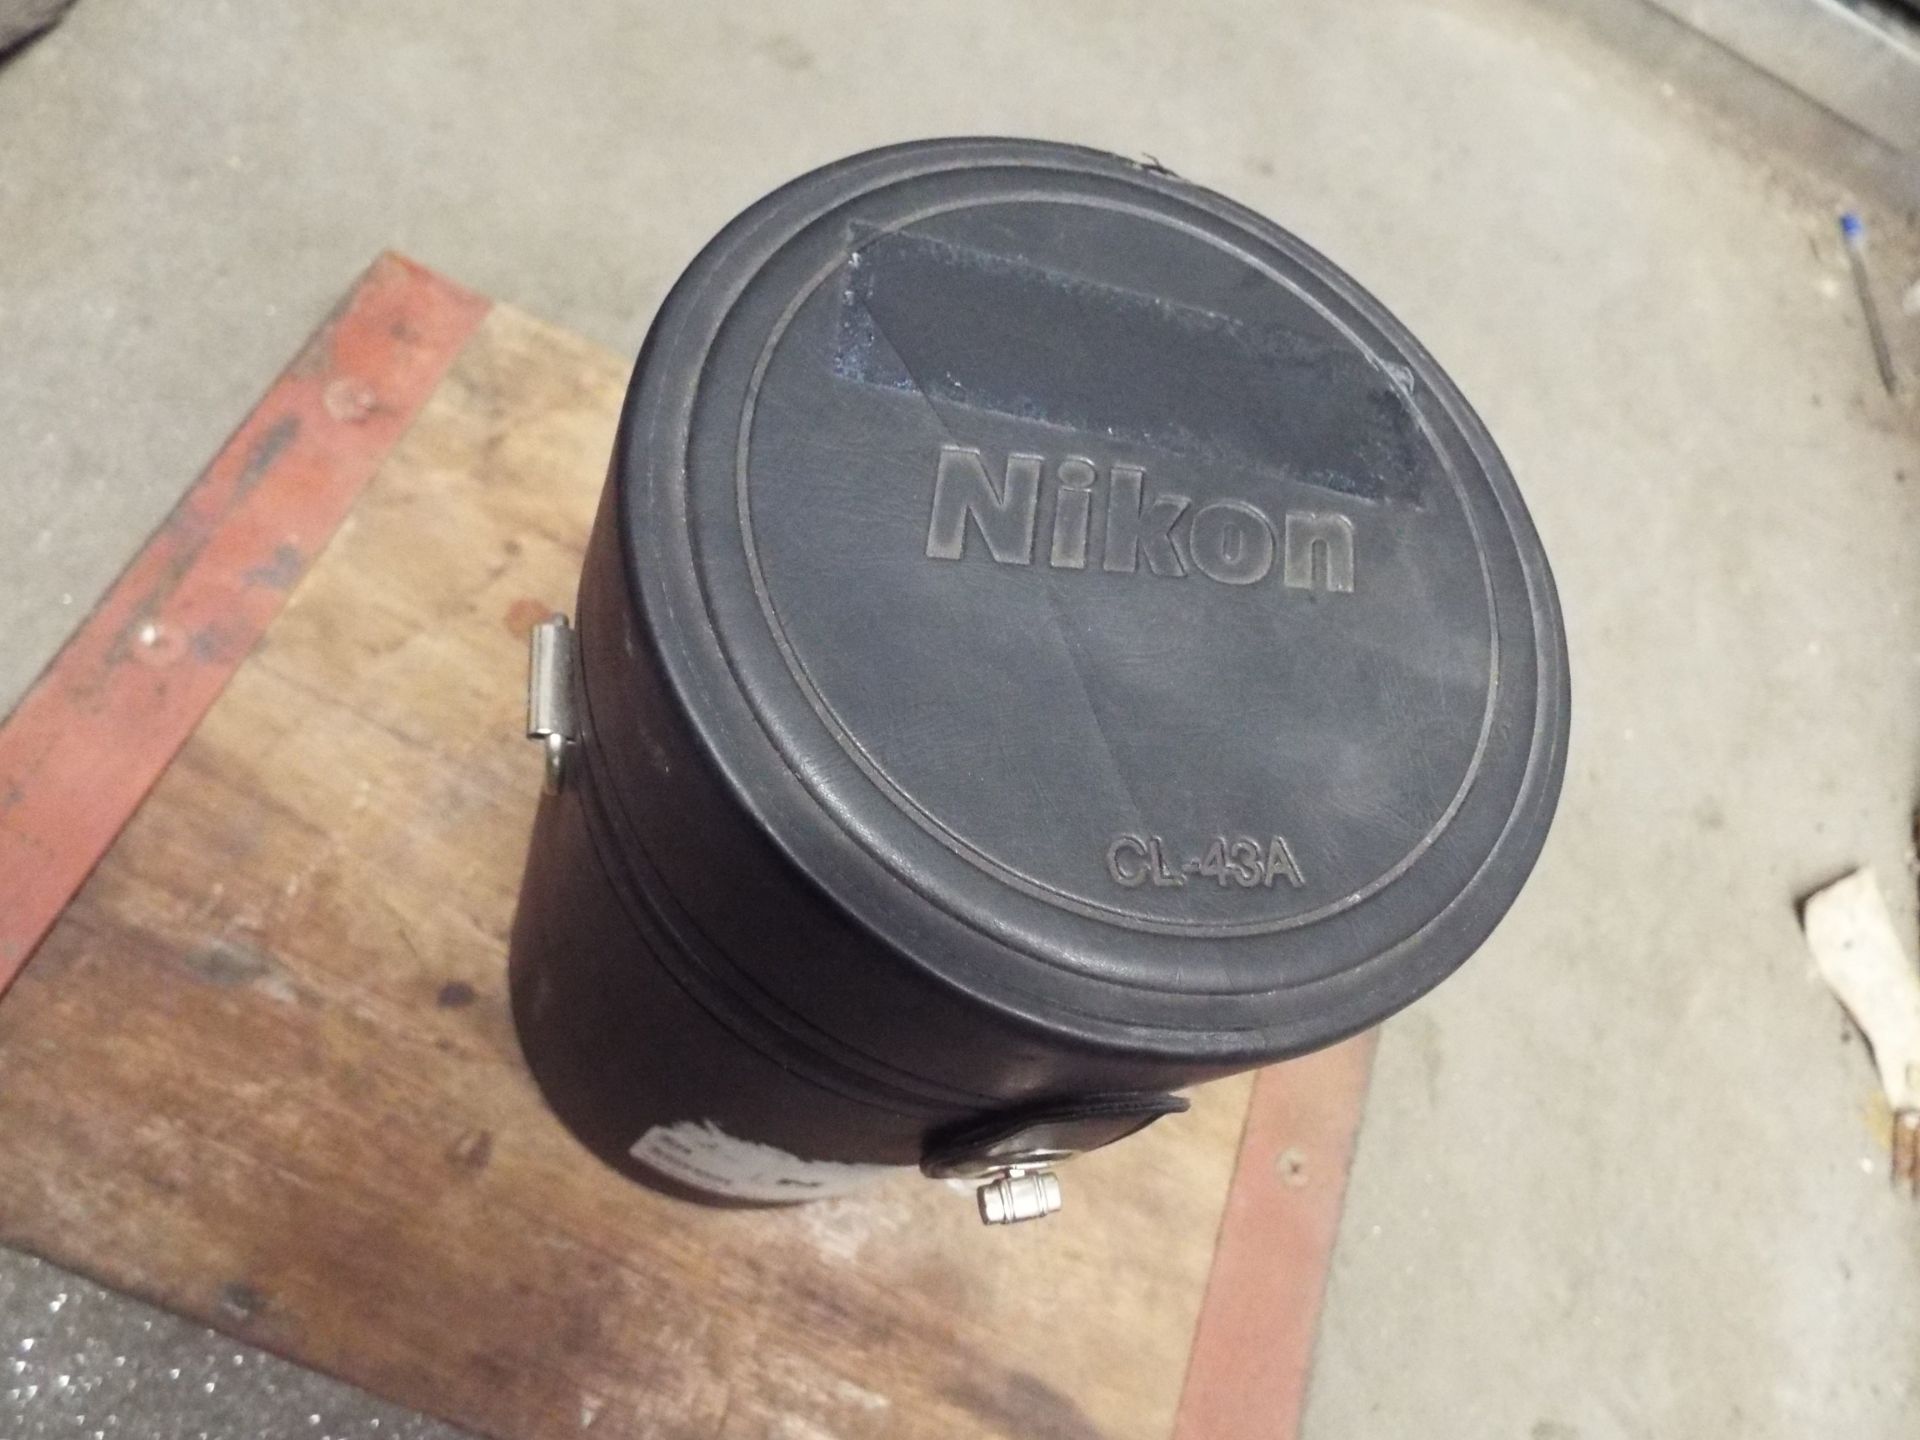 Nikon ED AF Nikkor 80-200mm 1:2.8 D Lense with Leather Carry Case - Image 7 of 7